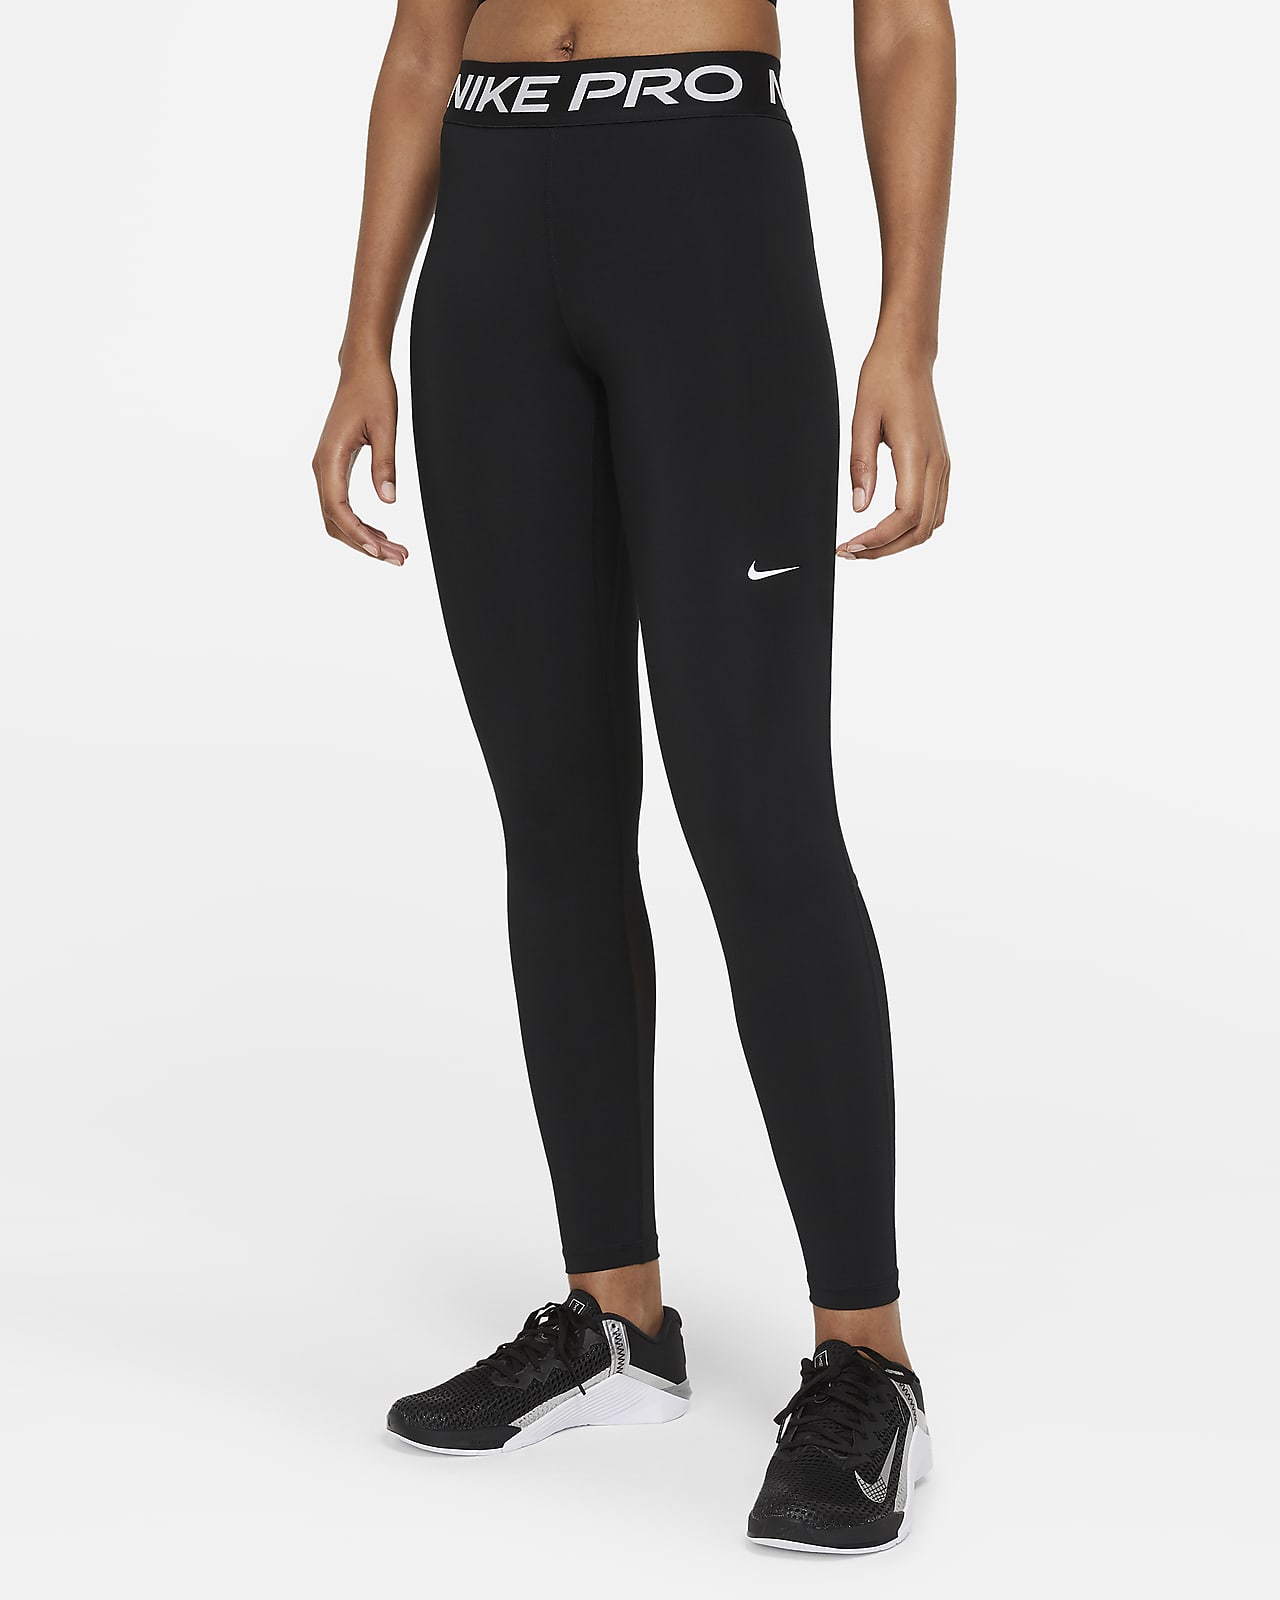 Γυναικείο κολάν μεσαίου ύψους με φάσες από διχτυωτό υλικό Nike Pro